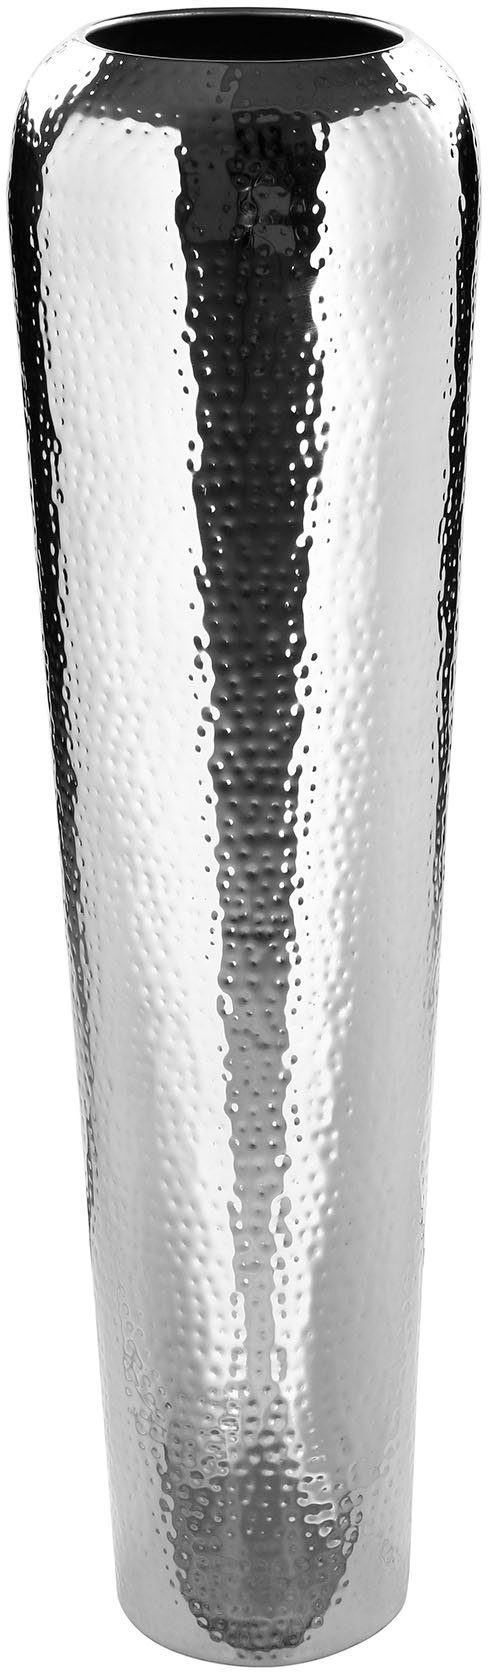 Fink Dekovase TUTZI, mit gehämmerter Struktur (1 St), Vase aus Metall, vernickelt, Bodenvase